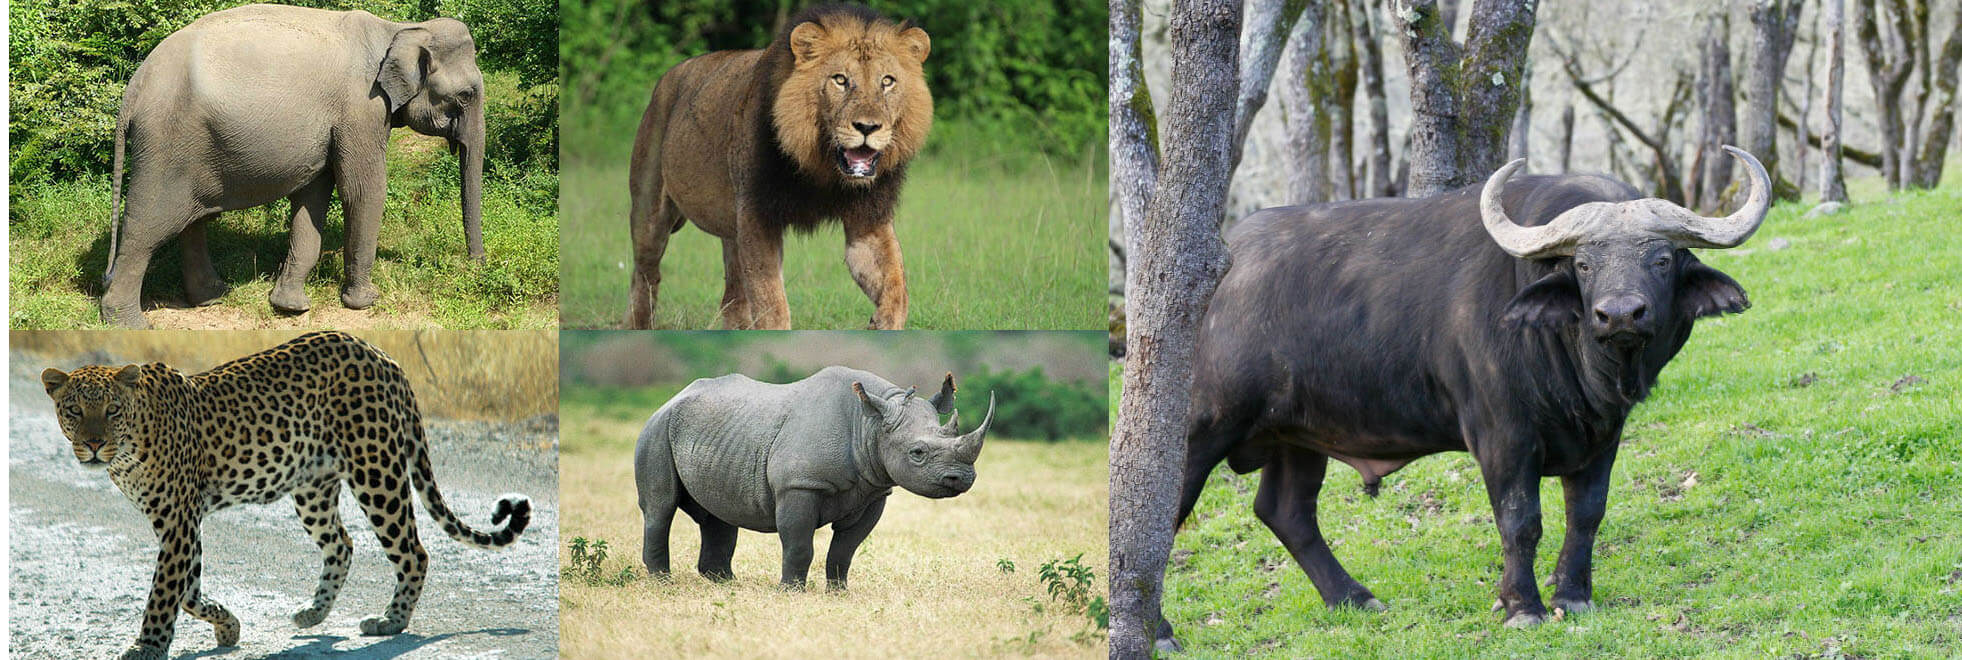 Big 5 animals in Uganda | Uganda Wildlife Safaris | Uganda Tours